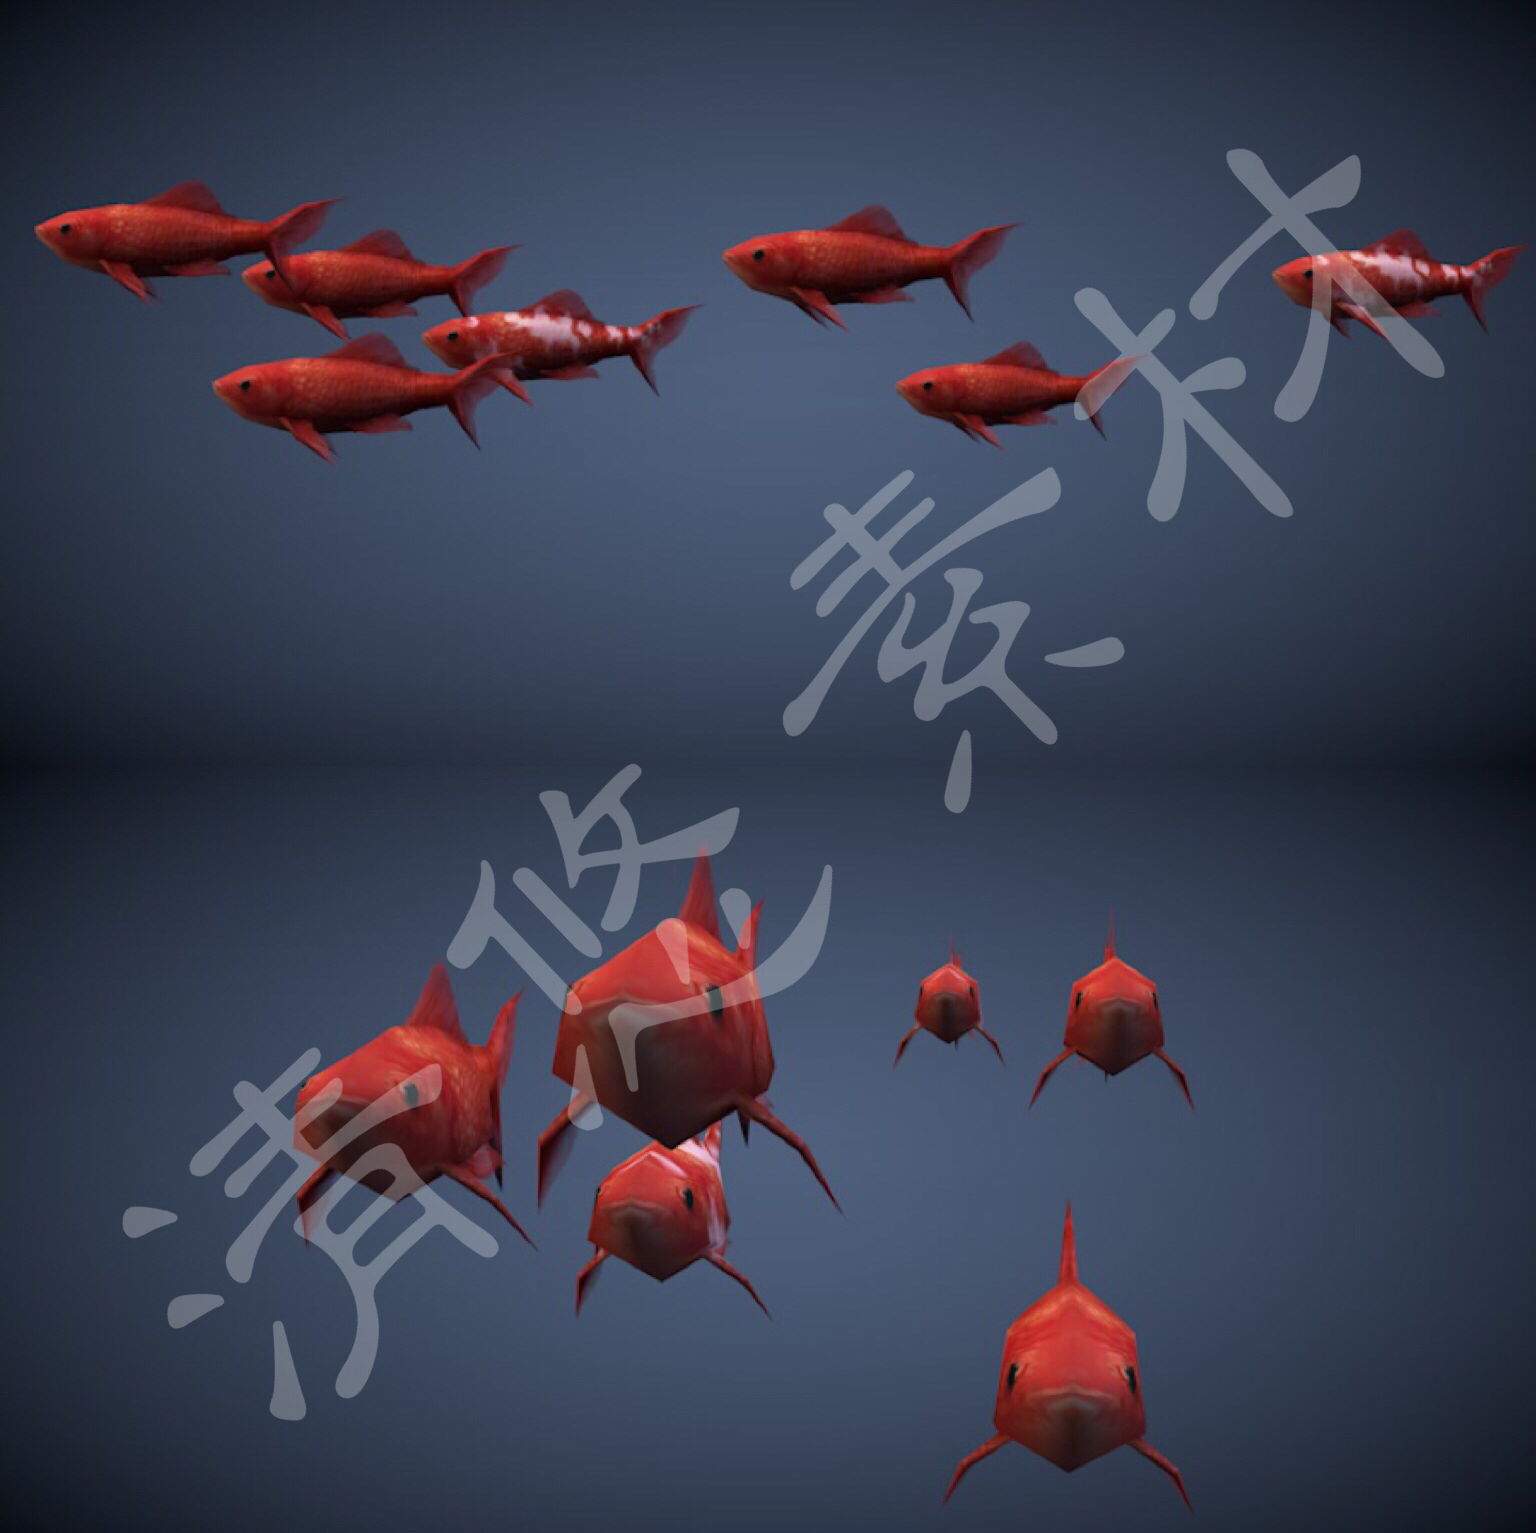 锦鲤鱼类3dmax c4d鱼群模型小鱼动物骨骼绑定游泳动画fbx格式 262